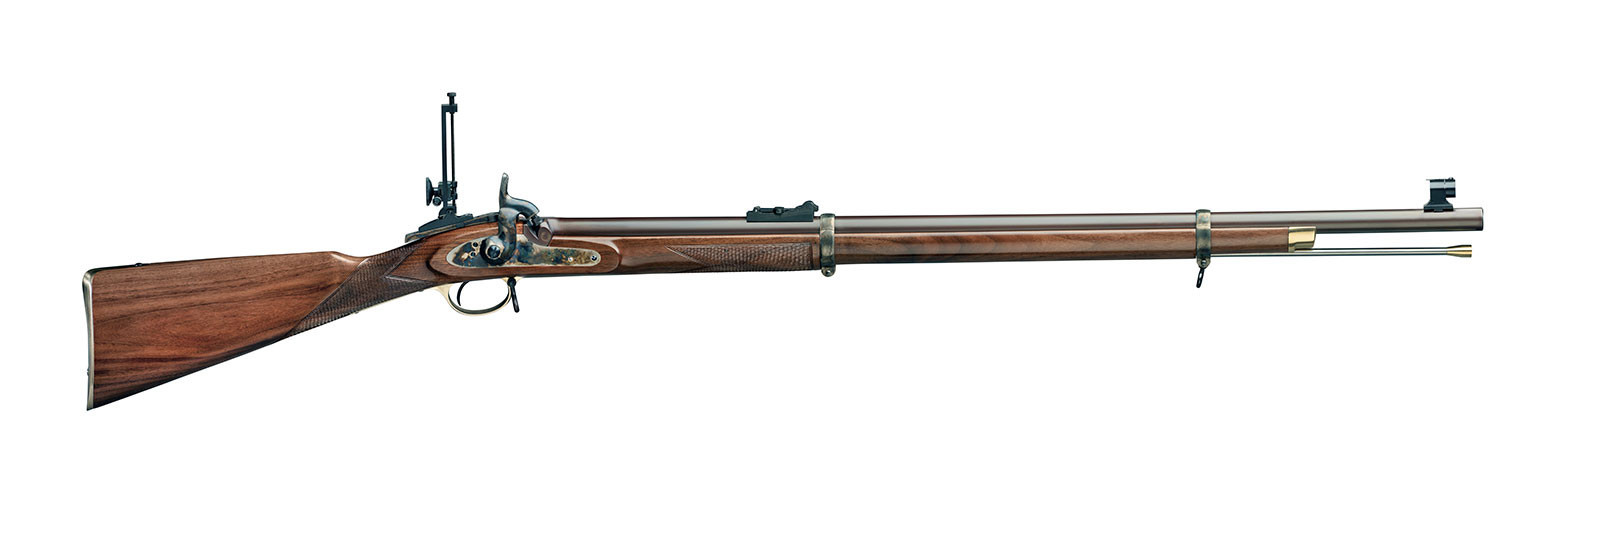 1860 Volunteer Target Rifle